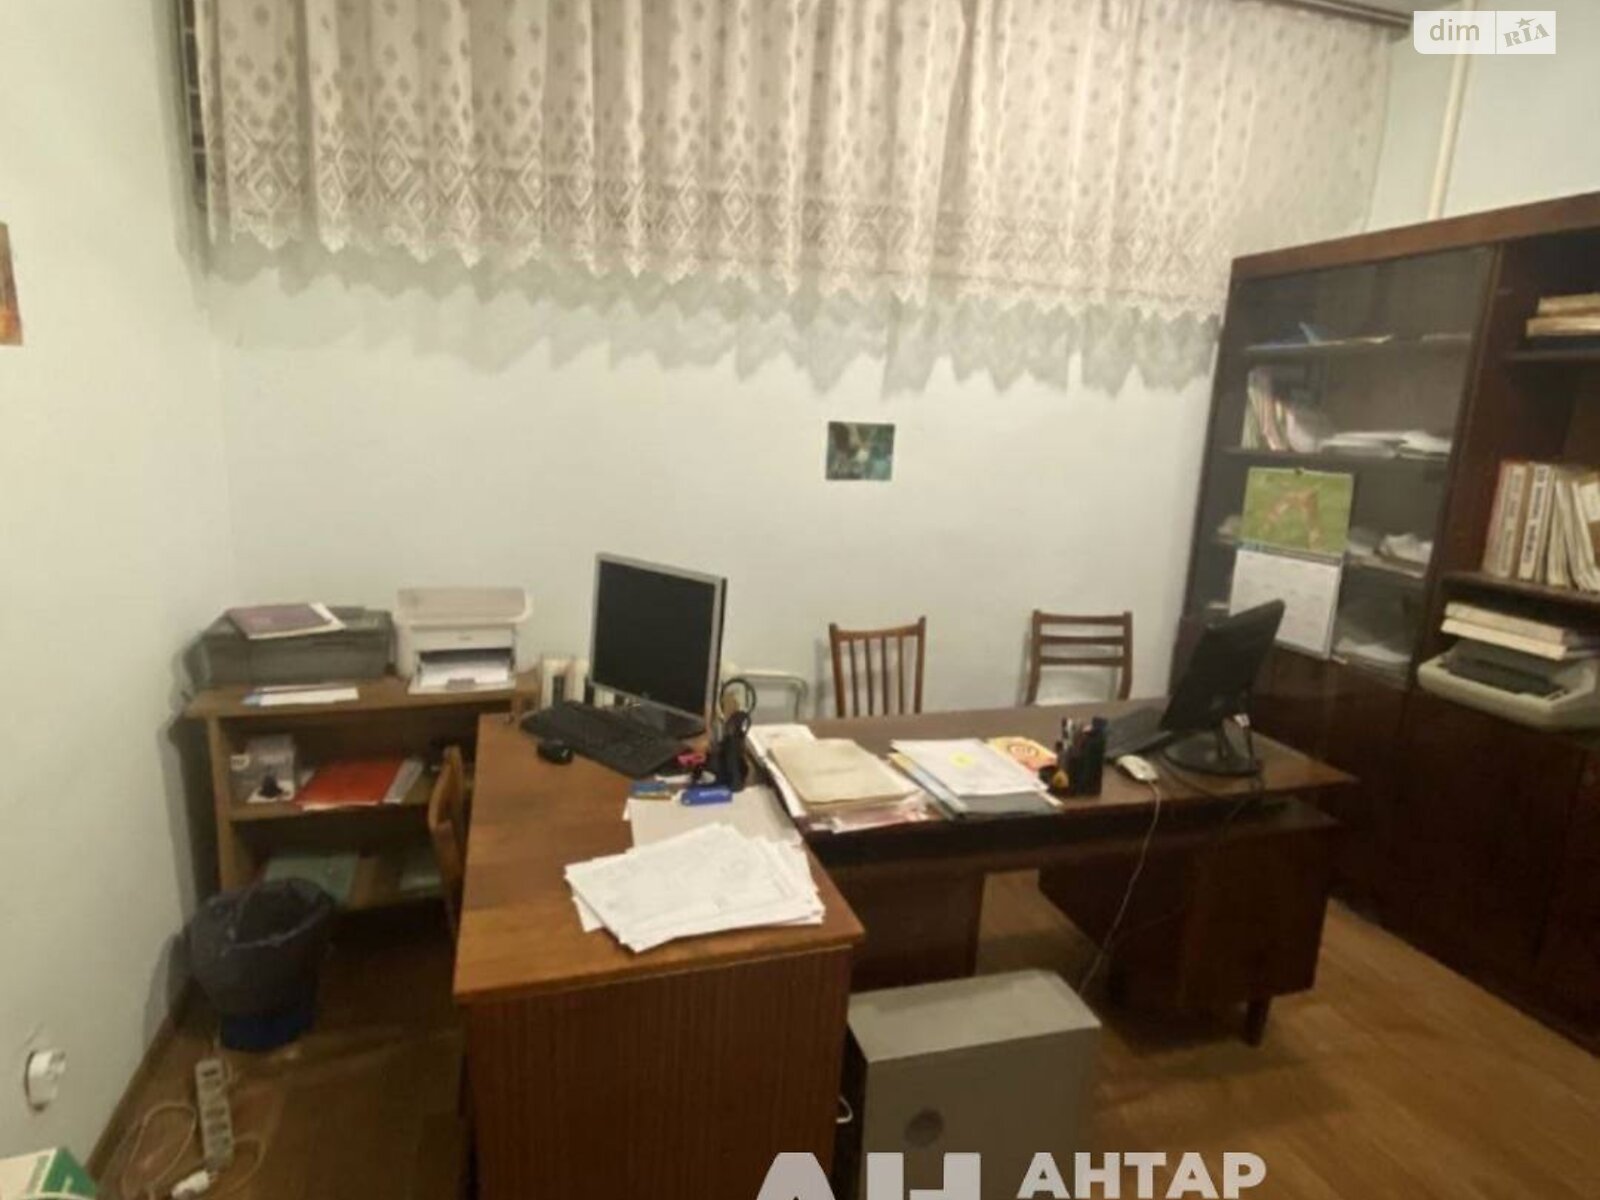 Аренда офисного помещения в Кропивницком, Пашутинская улица 22, помещений -, этаж - 1 фото 1